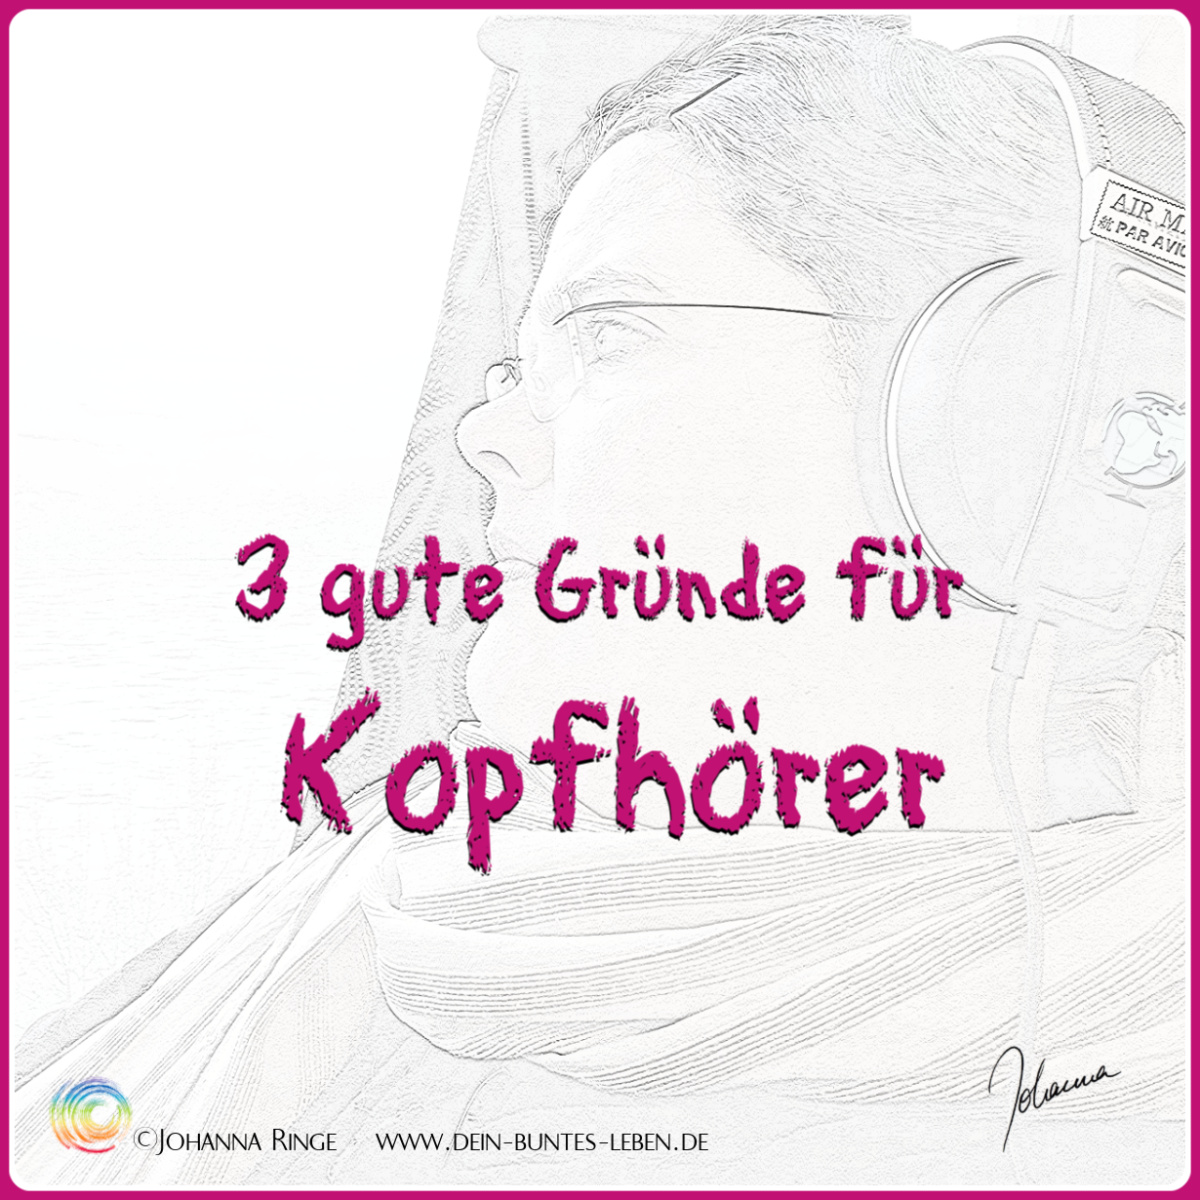 3 gute Gründe für Kopfhörer. Text über blassem Foto von J. mit Kopfhörer im Zug. ©Johanna Ringe 2019 www.dein-buntes-leben.de